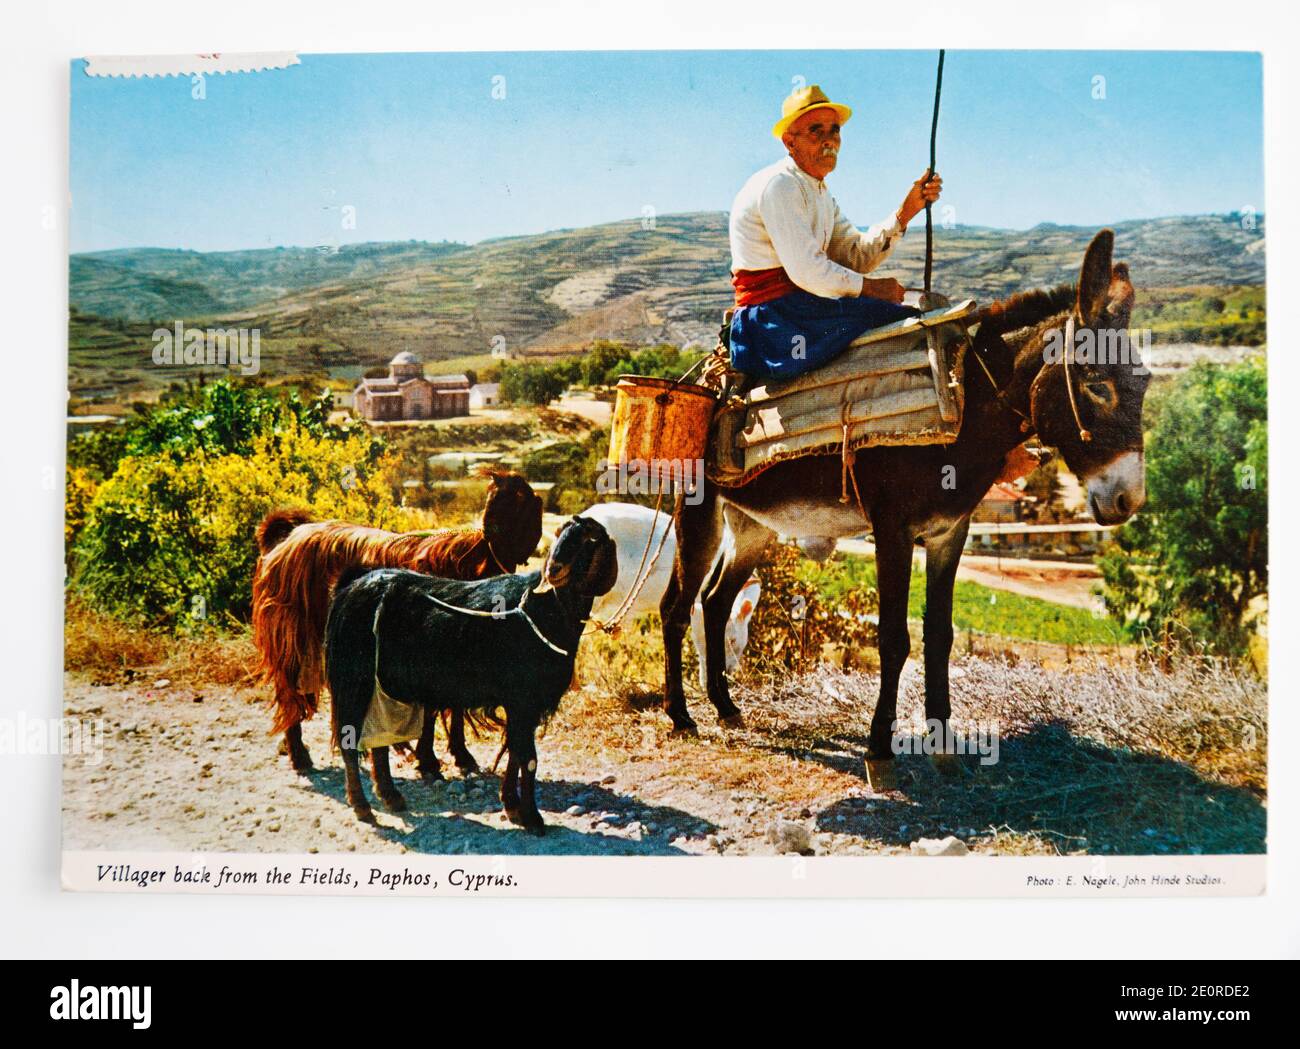 Alt farbige Postkarte aus Zypern zeigt alten Mann auf einem Esel mit seinen Ziegen. Beschriftet als “Dorfbewohner zurück von den Feldern, Paphos, Zypern. Stockfoto